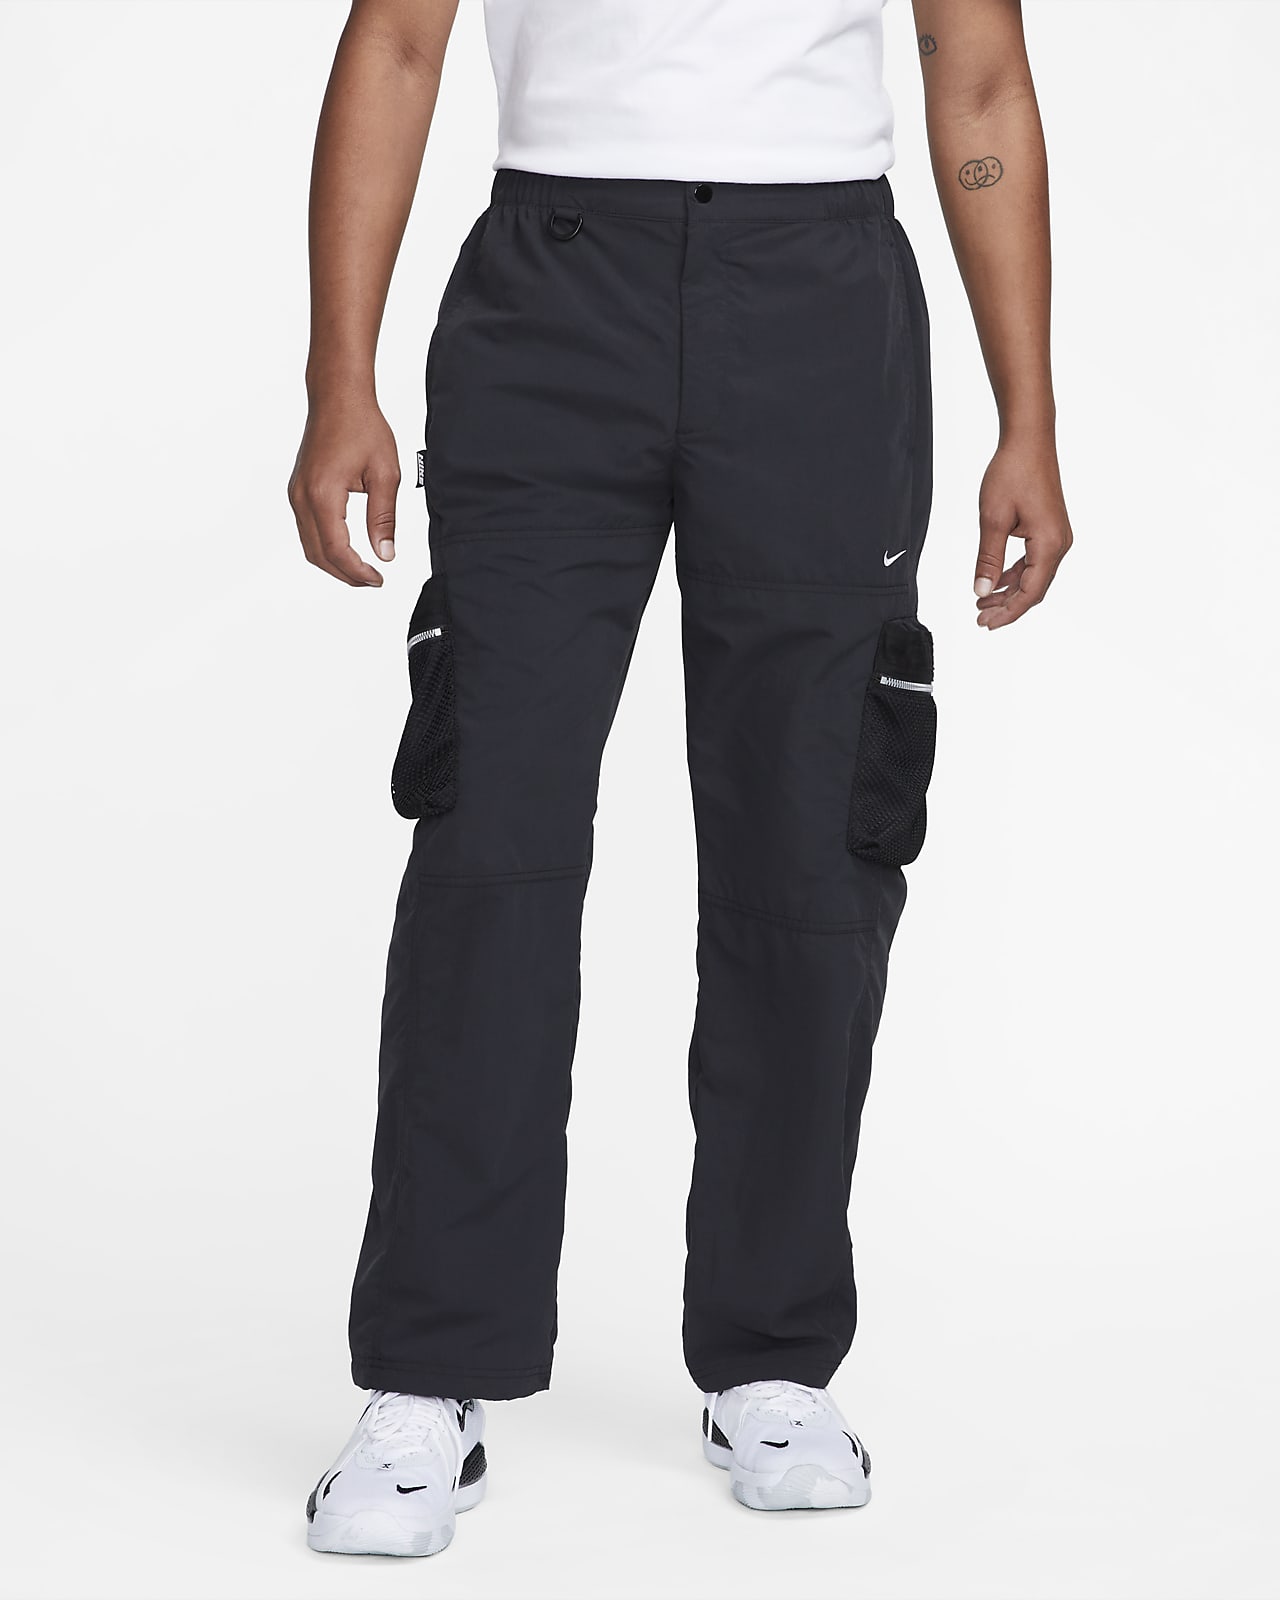 Men's Premium Pants. Nike.com